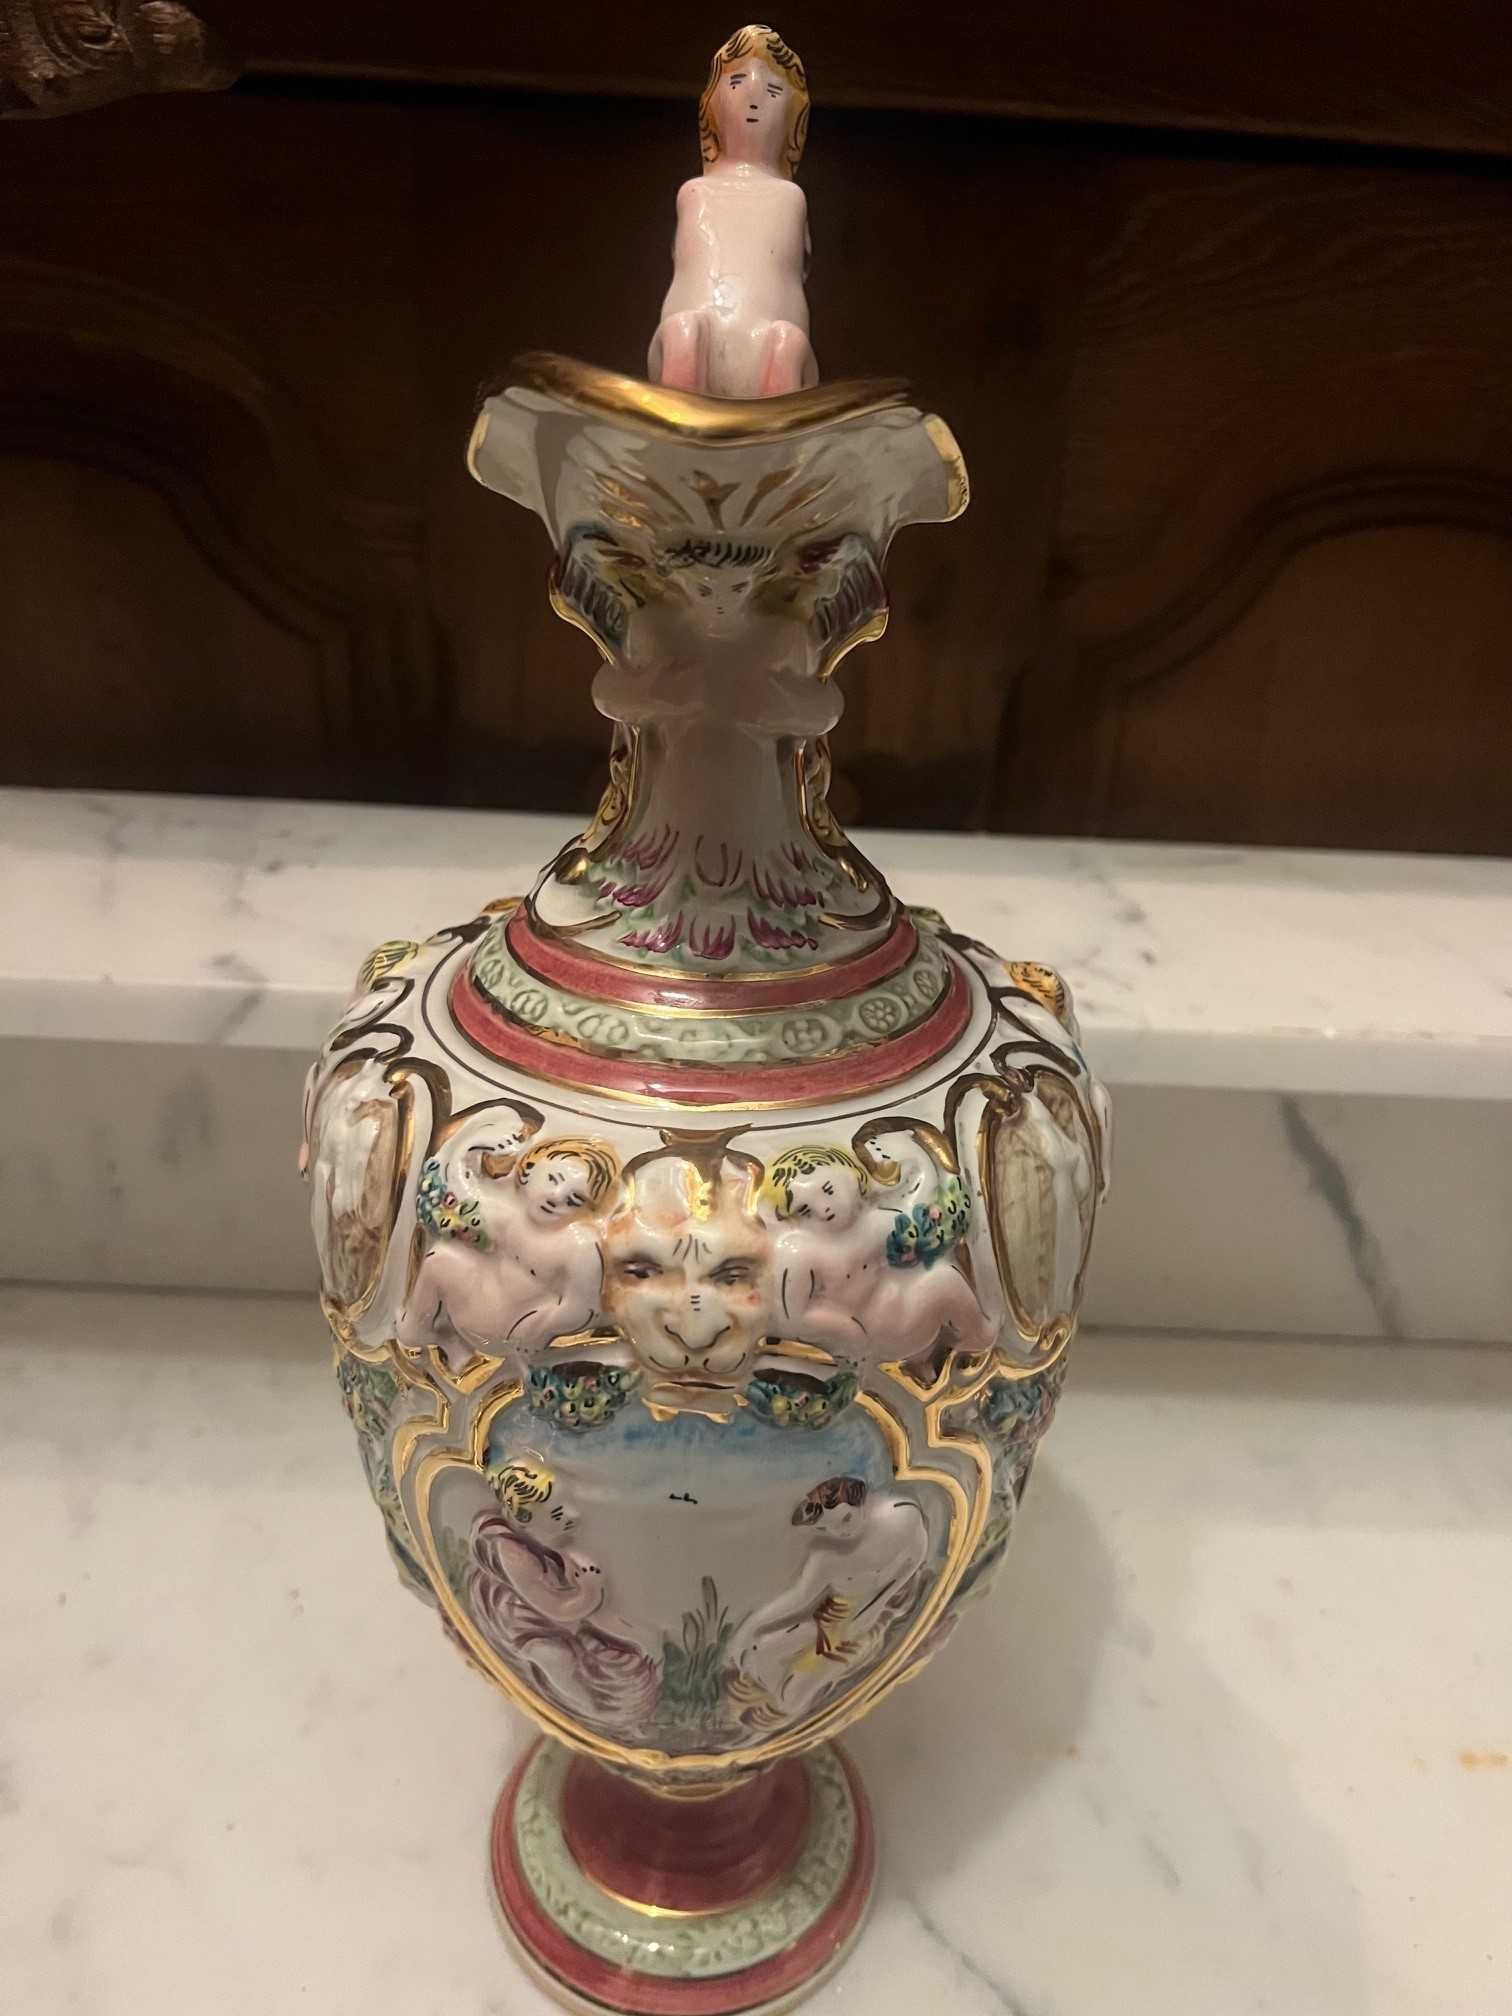 Piękny wazon włoski Capodimonte z porcelany malowanej ręcznie.